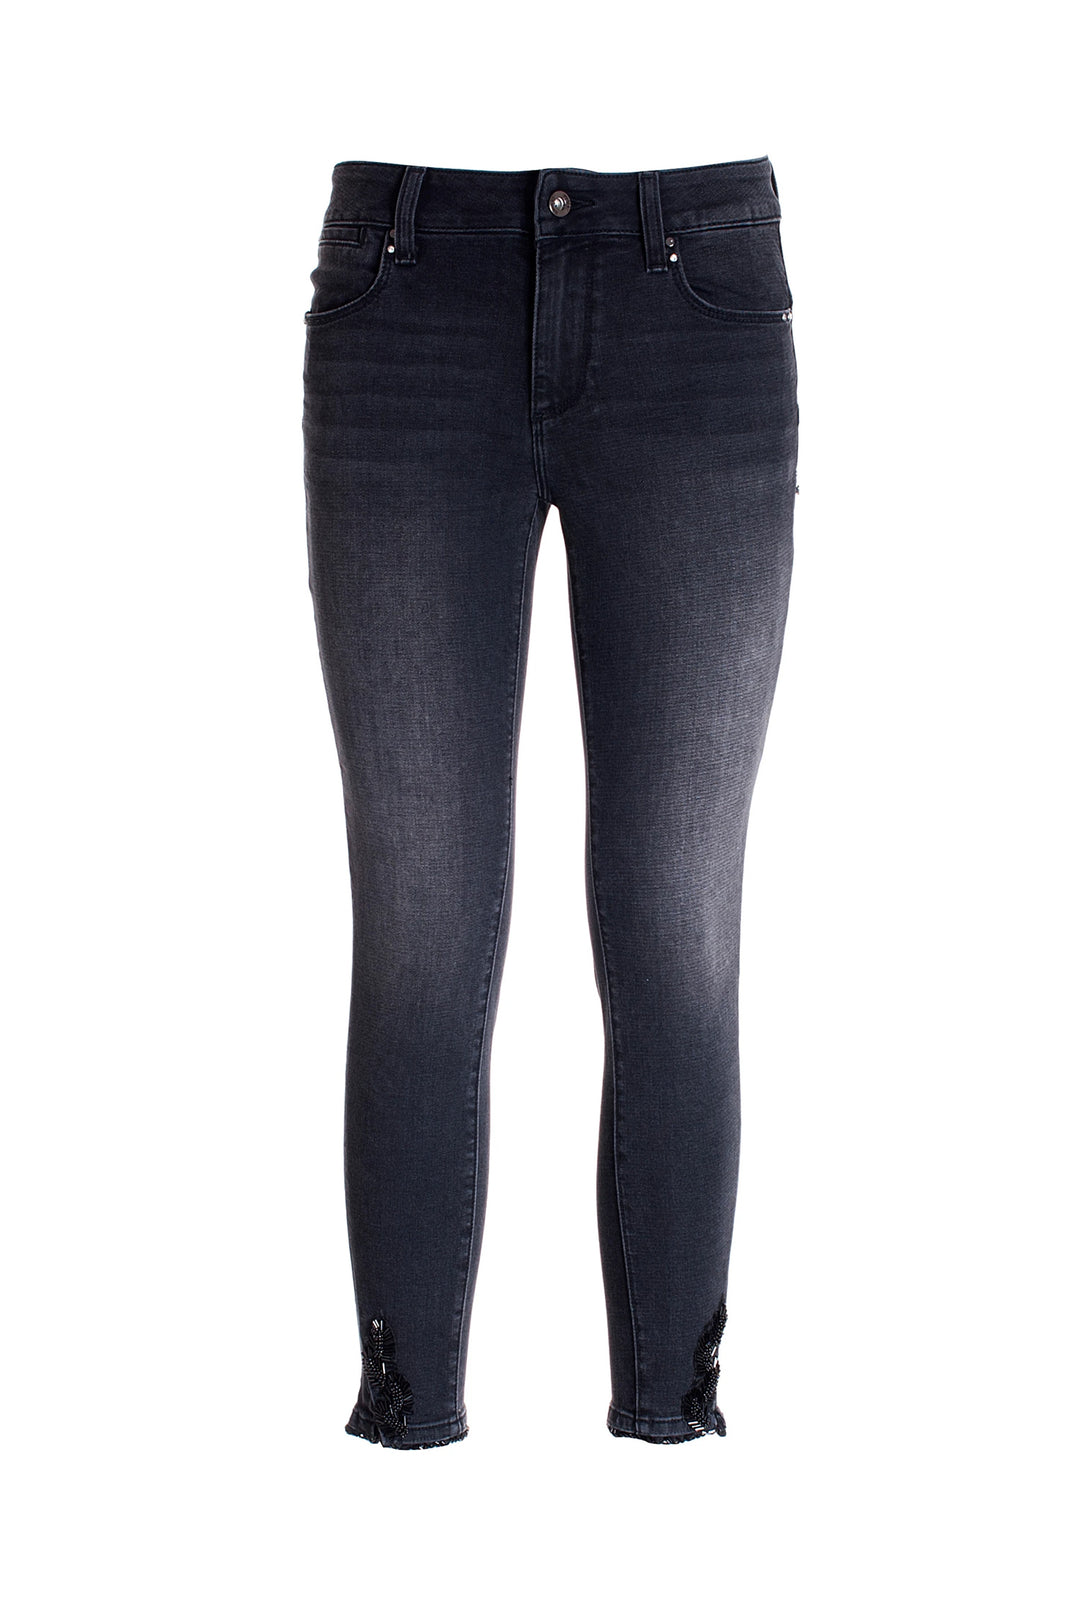 FRACOMINA Jeans skinny cropped effetto push up in denim con lavaggio scuro - Mancinelli 1954